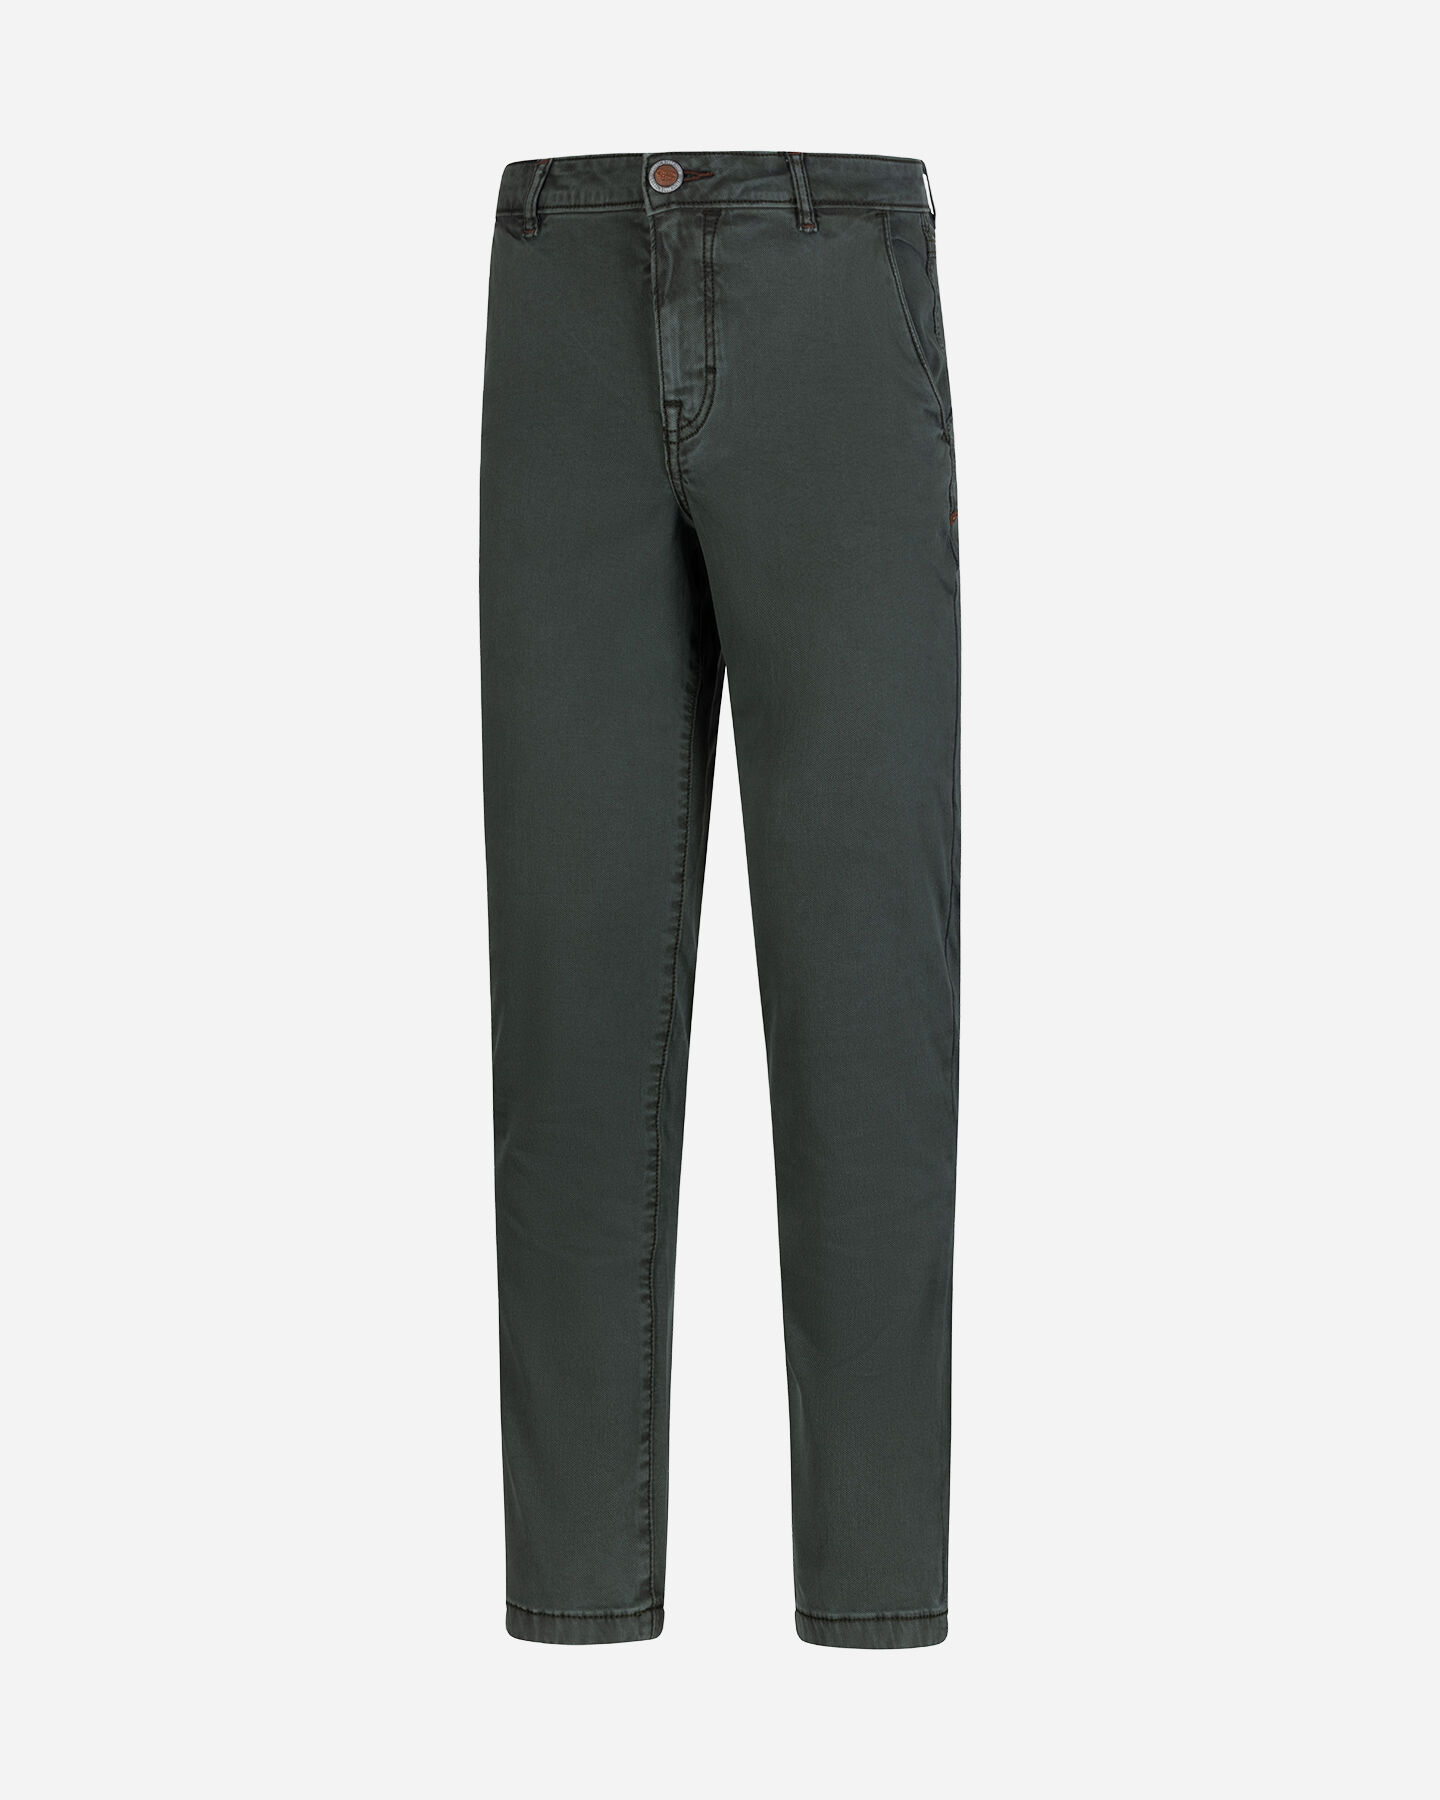  Pantalone COTTON BELT CHINO HYBRID M S4127003|043A|32 scatto 4